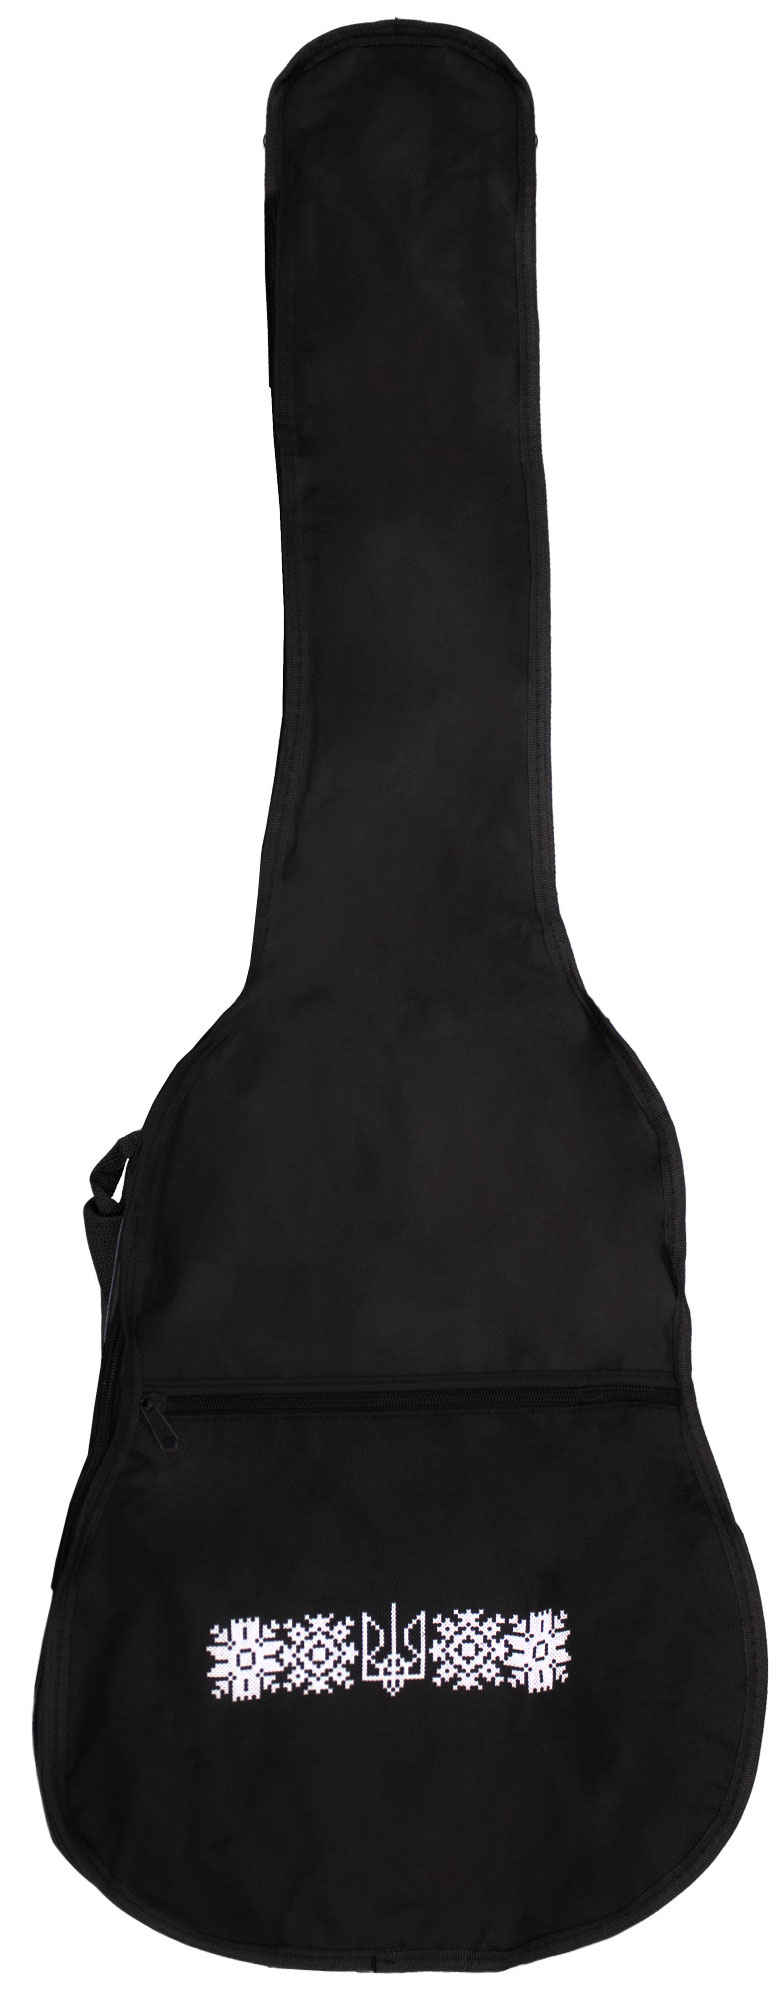 Чехол для классической гитары FZONE FGB41 Classic Guitar Bag